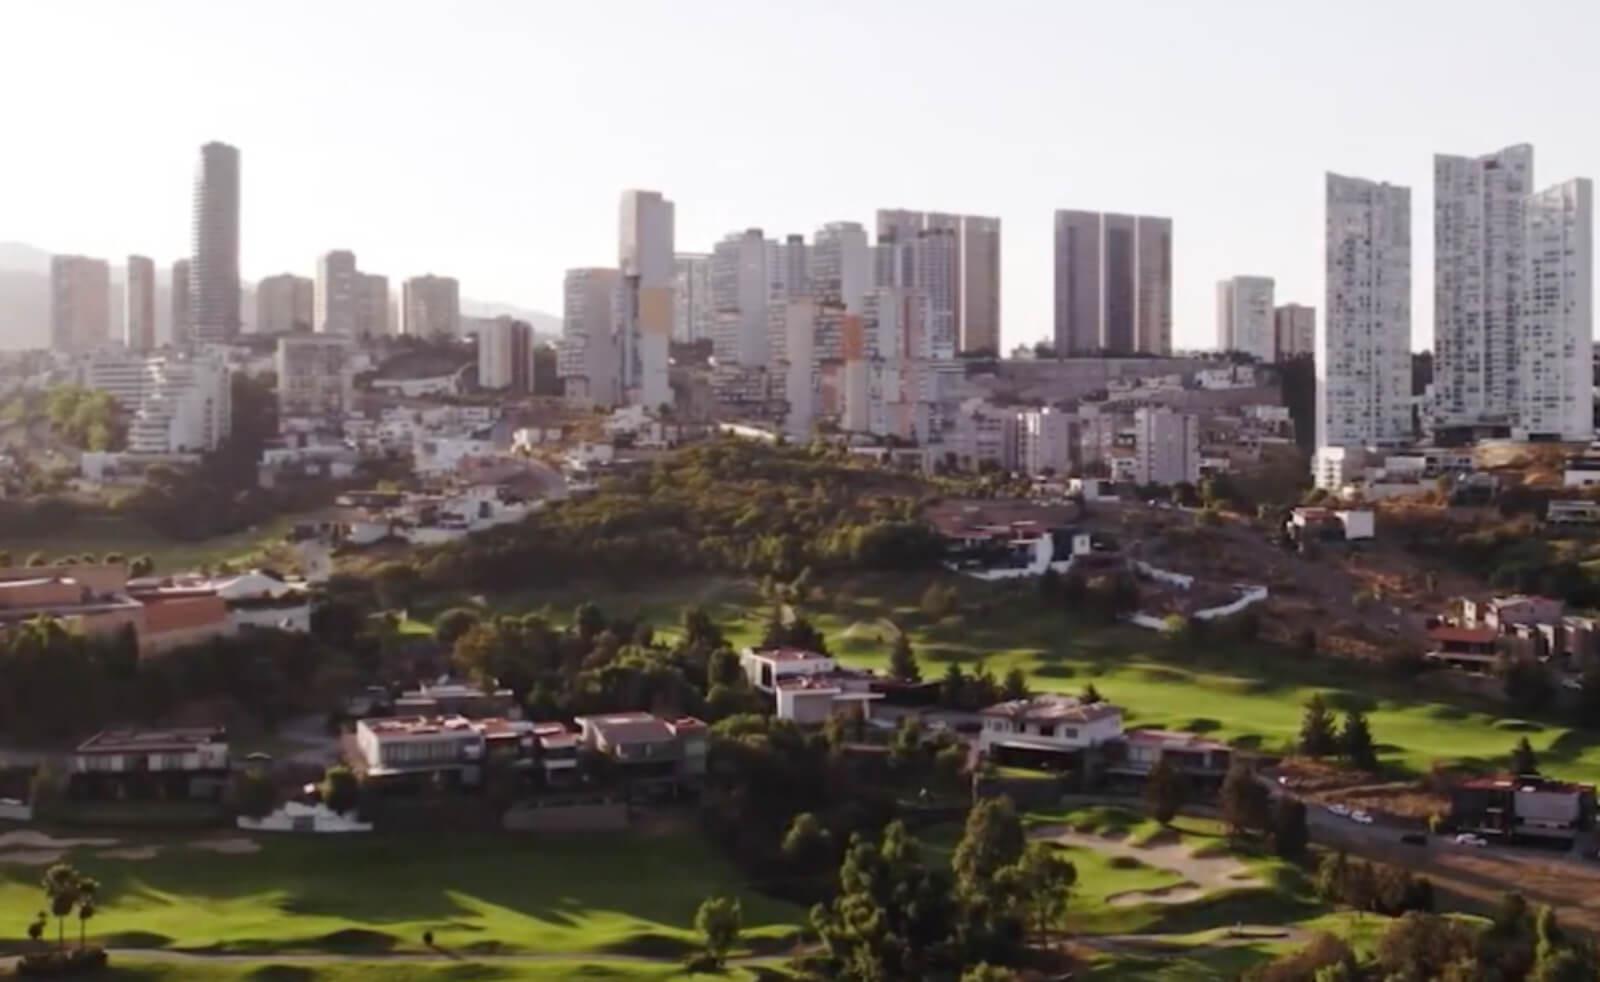 Terreno multifamiliar 5,000 m2 en residencial con campo de golf, en venta.